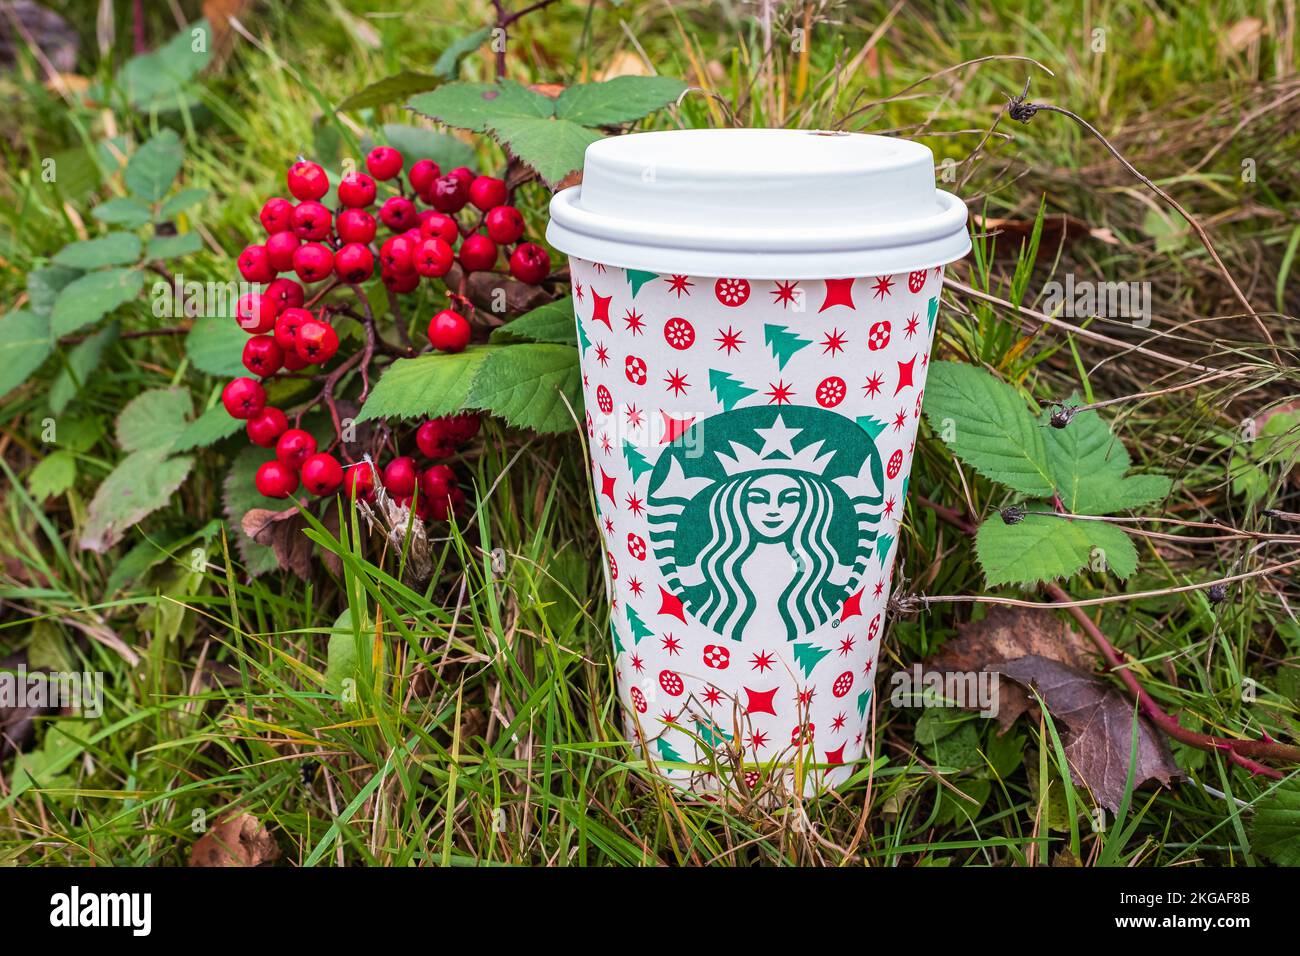 Ein hoher Starbucks Kaffee mit grünem, natürlichem Hintergrund. Starbucks ist mit über 20.000 Coffee Houses in 61 Ländern das größte Coffee House der Welt. Nachhaltigkeit Stockfoto